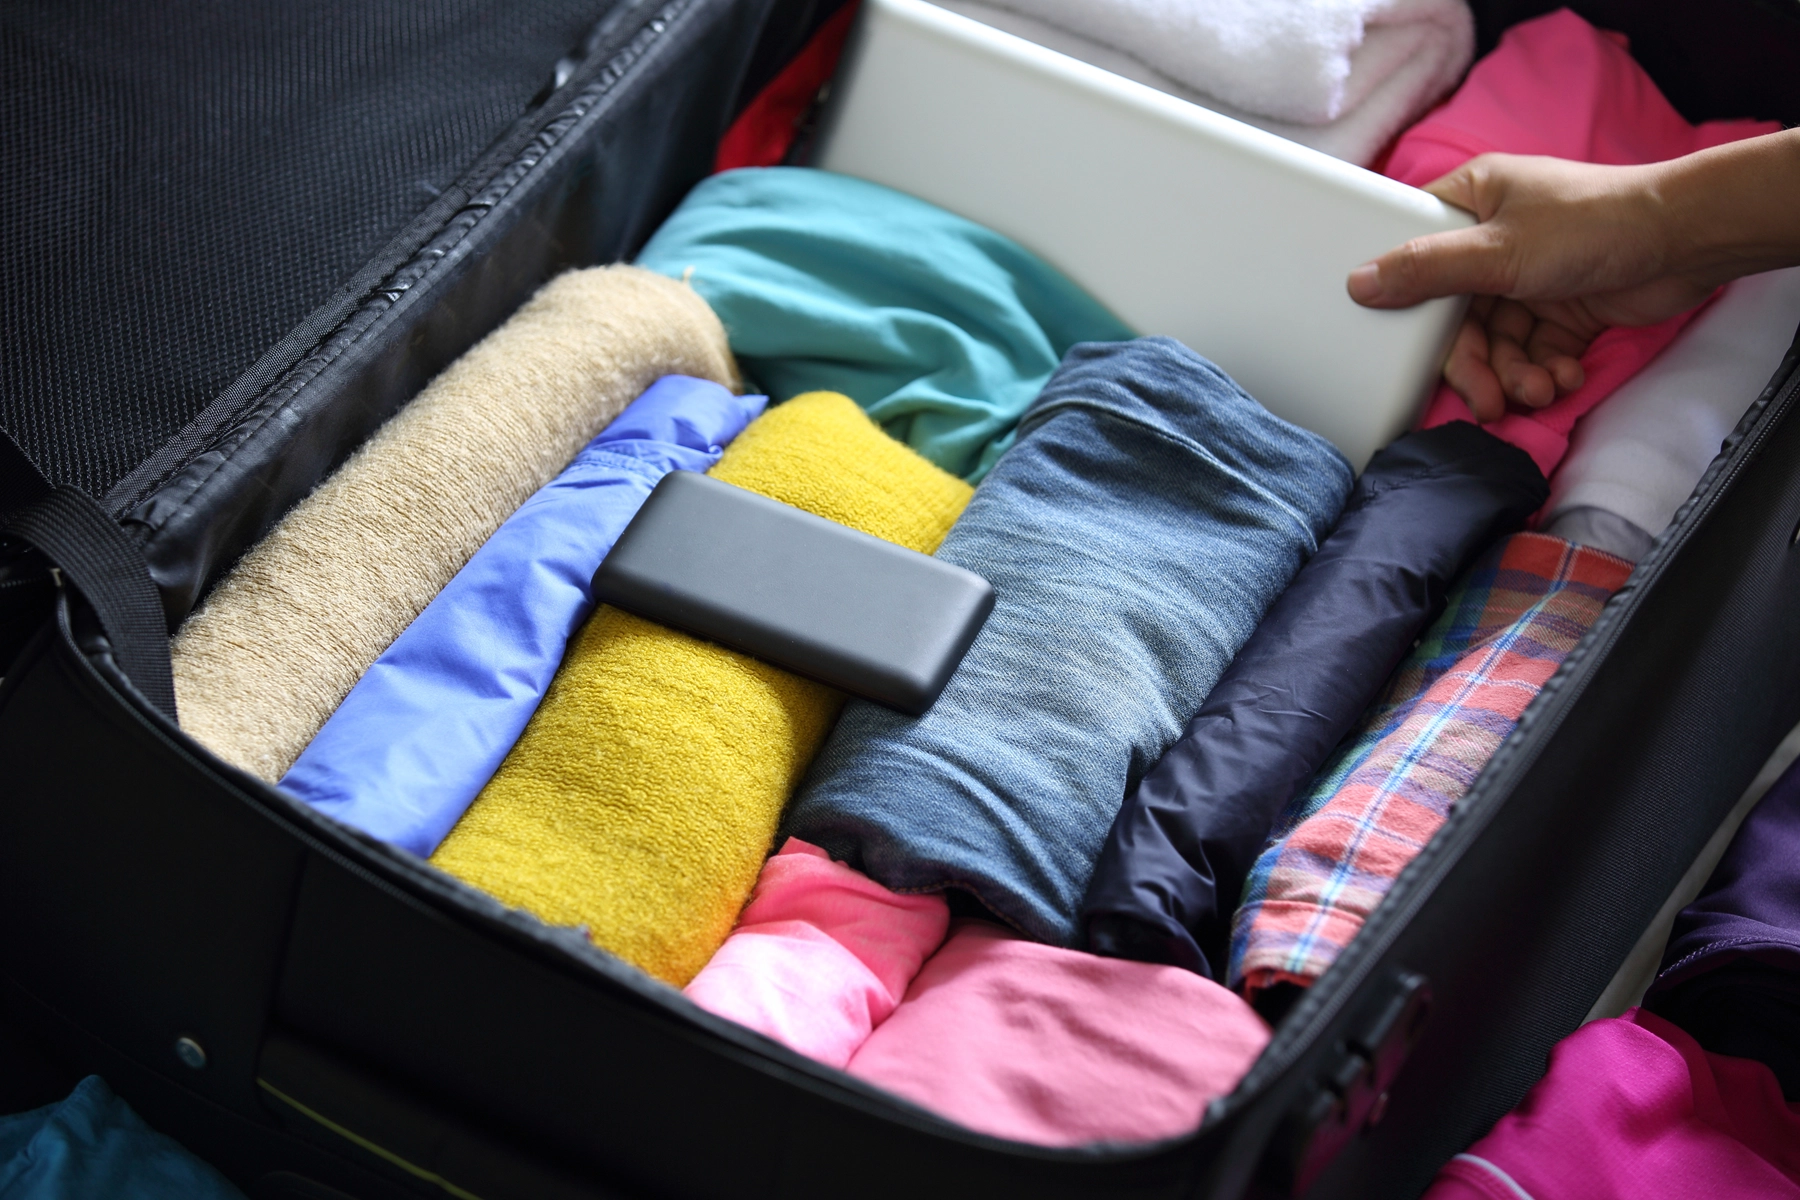 Empacar con inteligencia: Cómo seleccionar el equipaje adecuado para no exceder el peso permitido